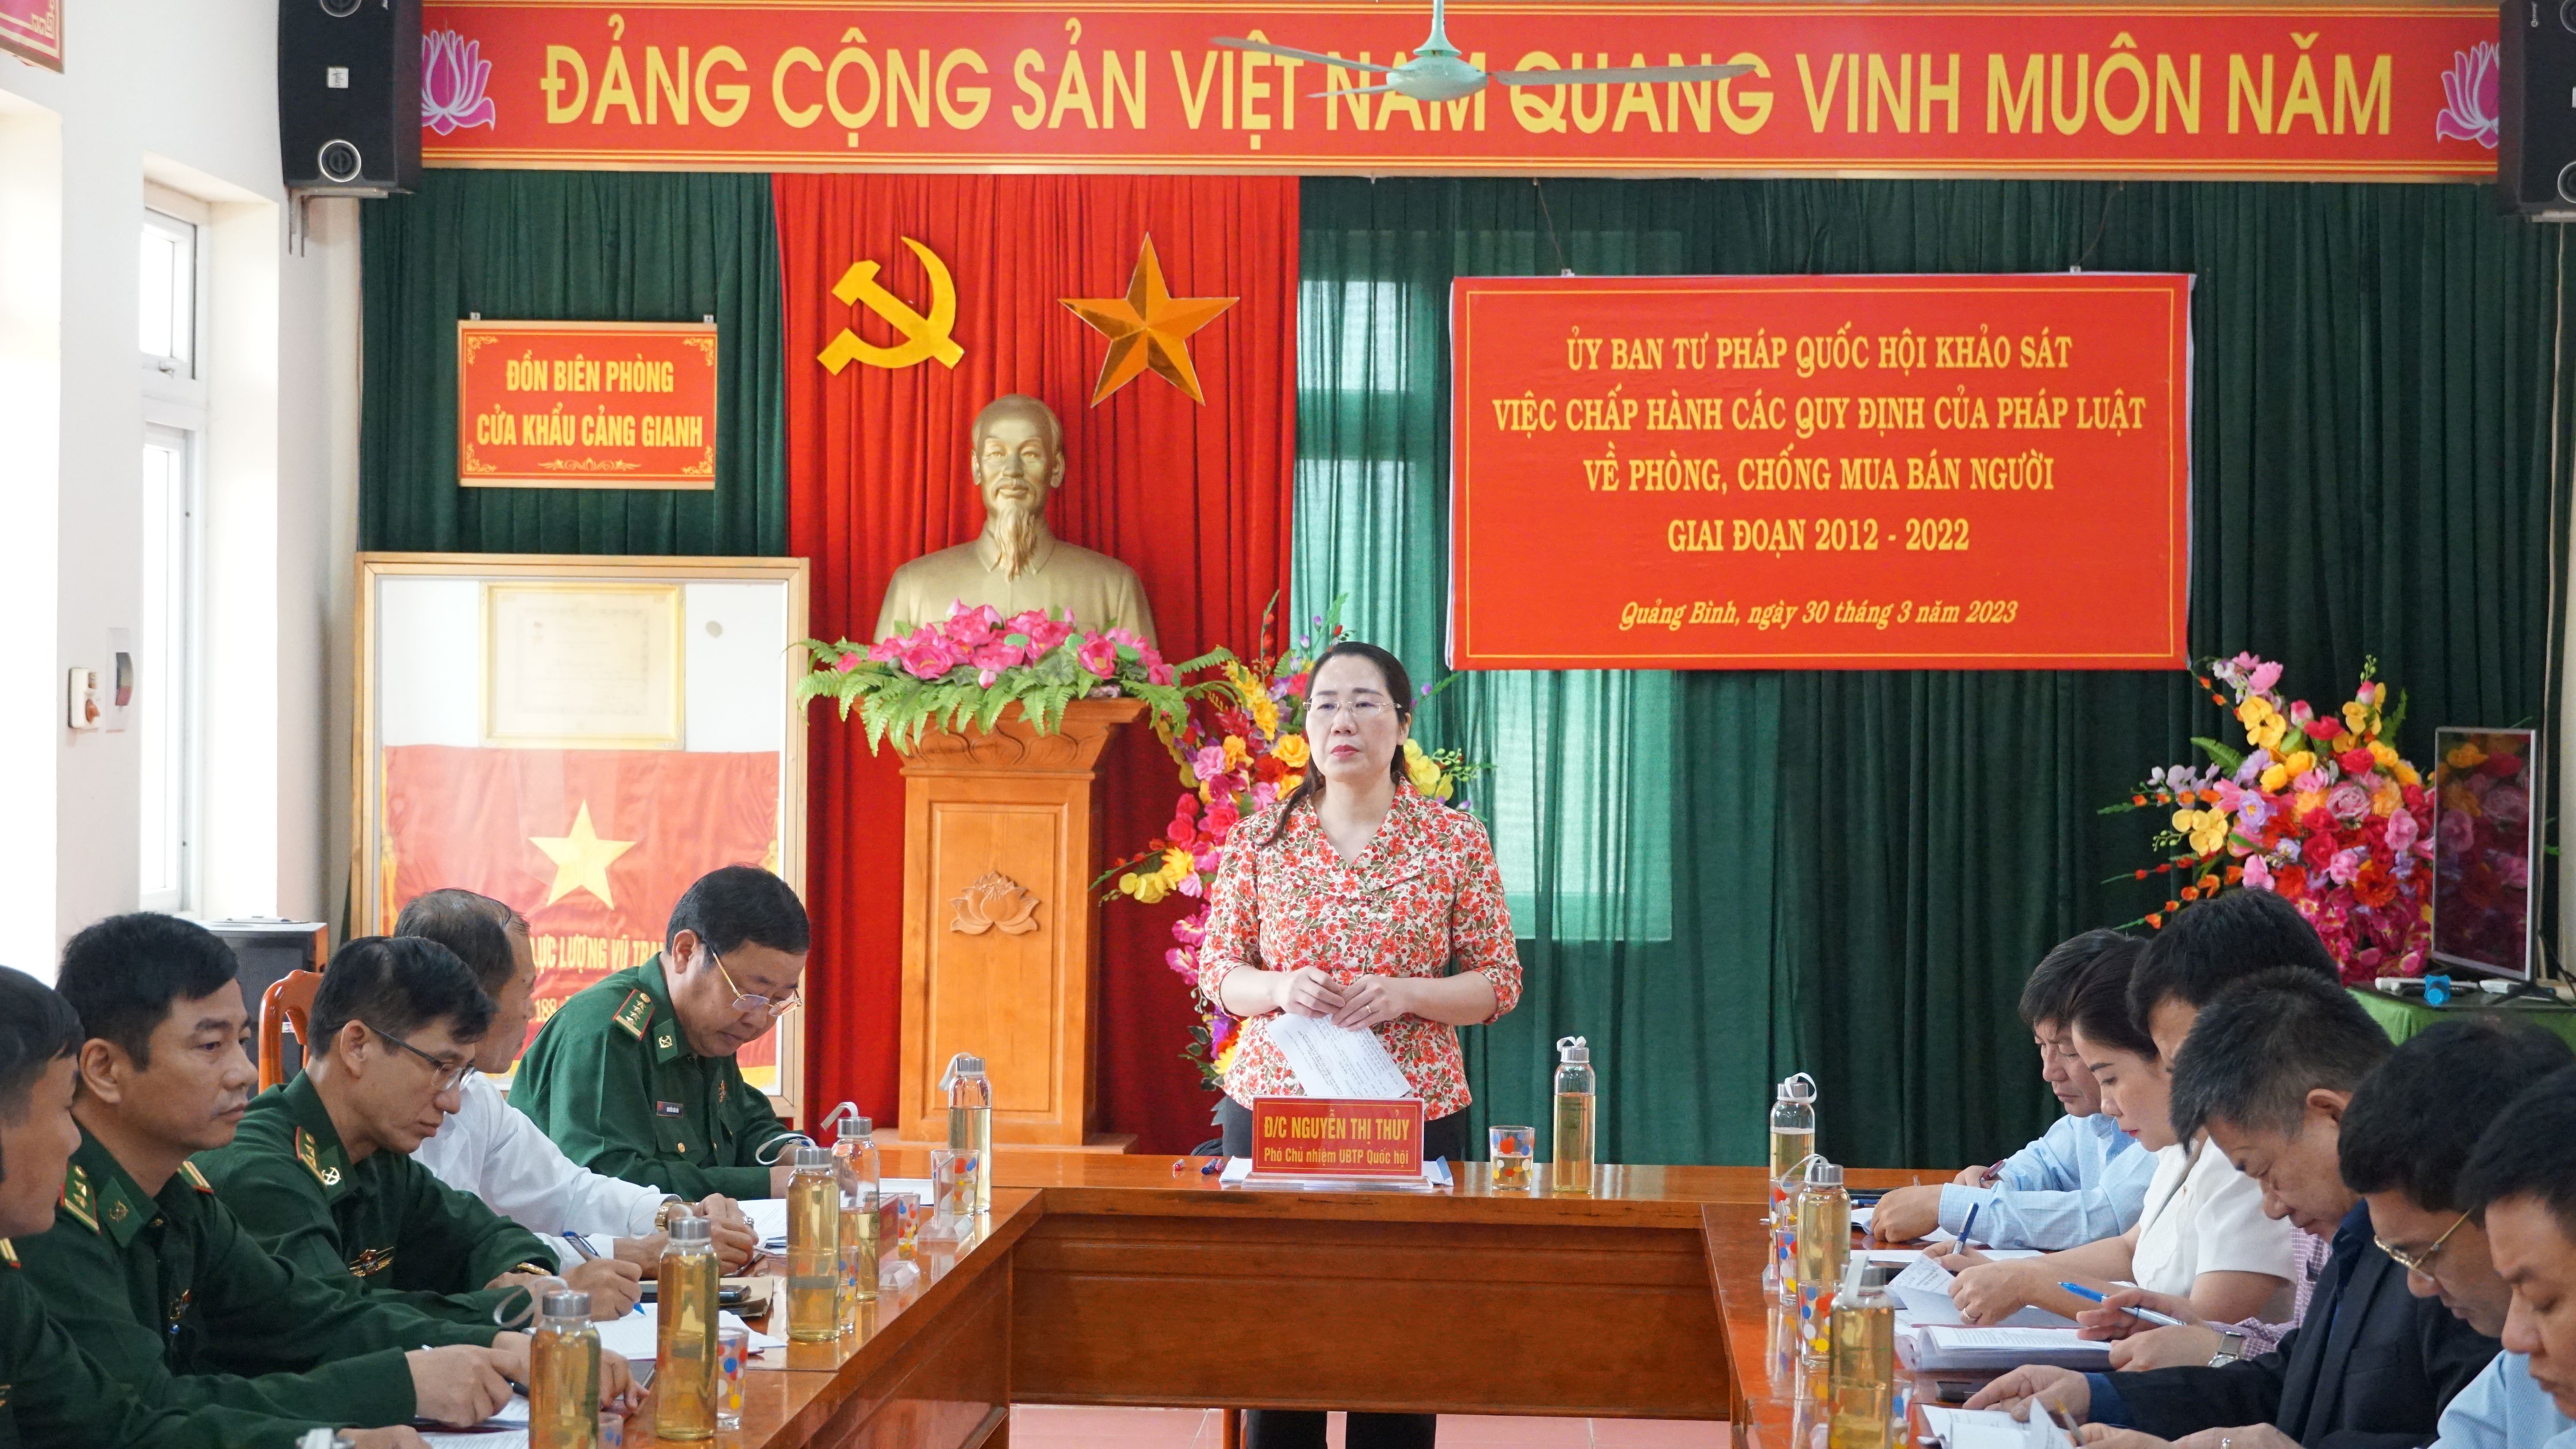 Đồng chí Nguyễn Thị Thủy, Phó Chủ nhiệm UBTPQH, Trưởng đoàn khảo sát phát biểu kết luận tại buổi làm việc.